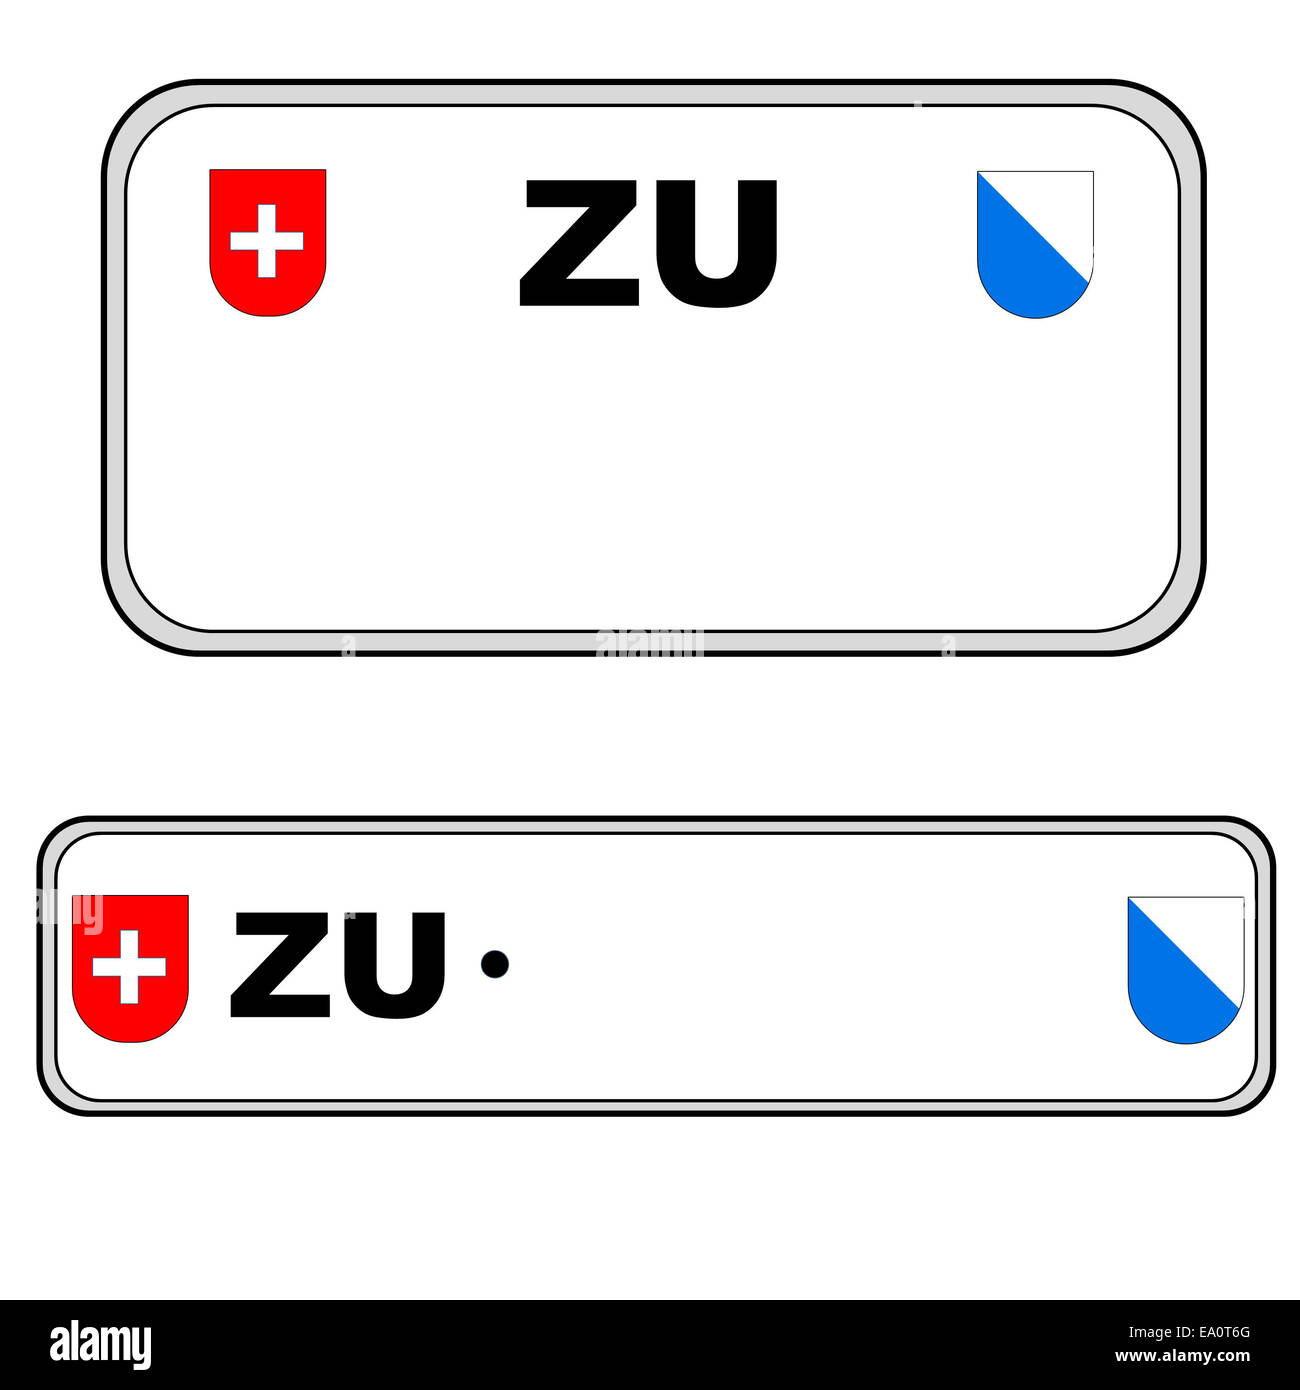 Zurich plate number, Switzerland Stock Photo